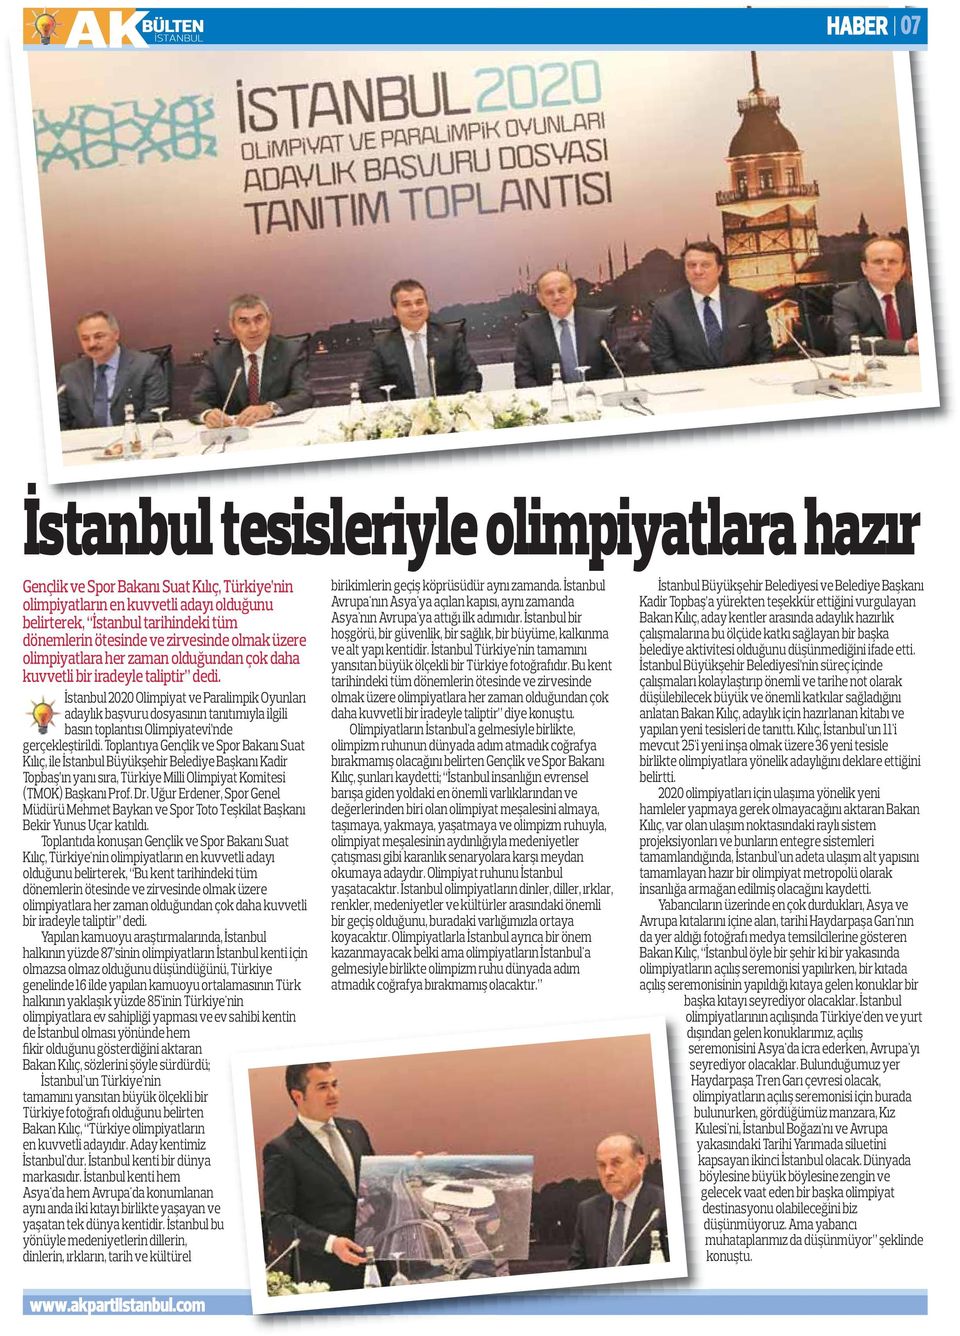 İstanbul 2020 Olimpiyat ve Paralimpik Oyunları adaylık başvuru dosyasının tanıtımıyla ilgili basın toplantısı Olimpiyatevi nde gerçekleştirildi.